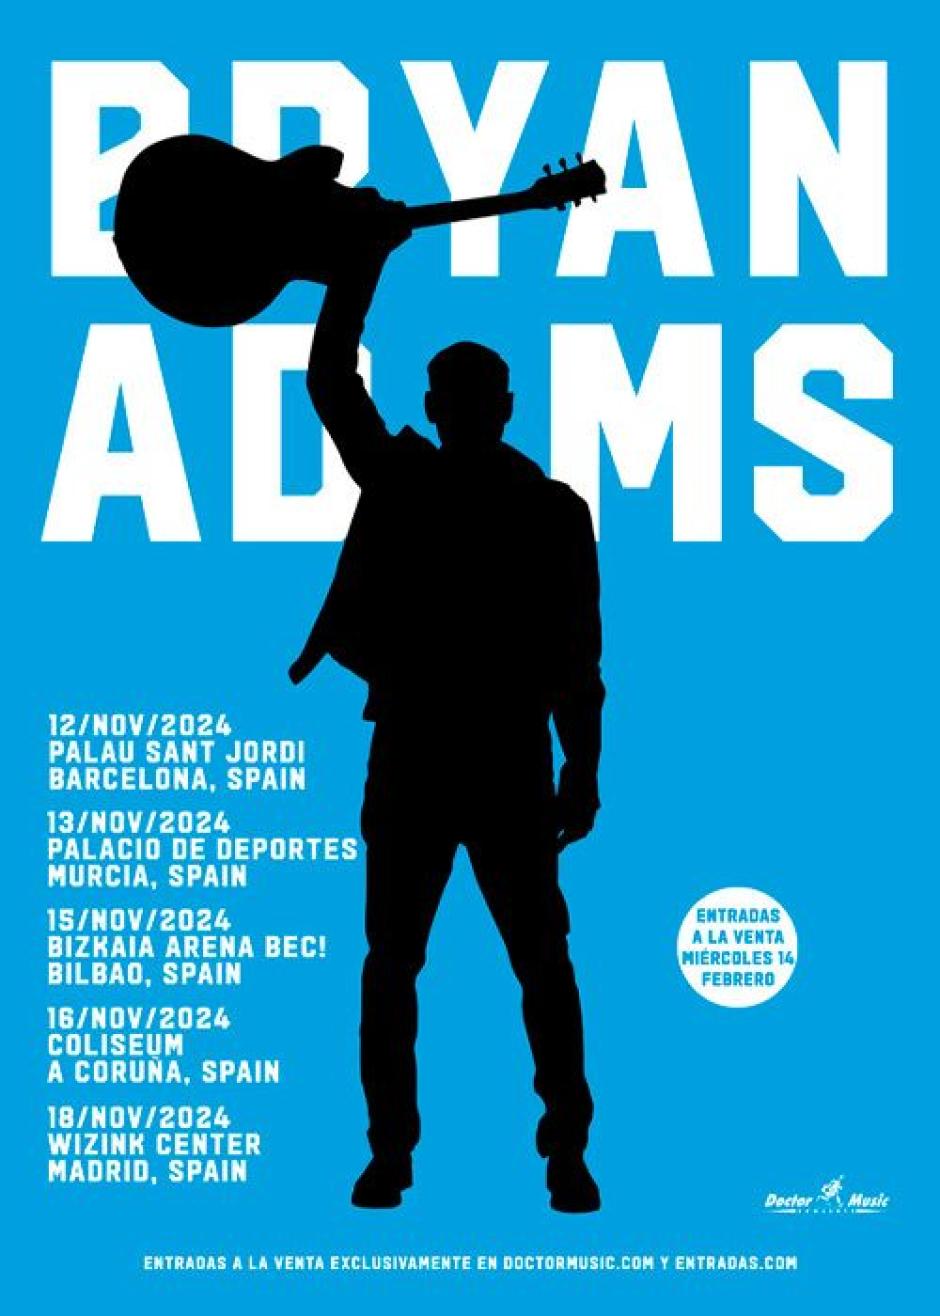 Cartel de la gira de Bryan Adams en España